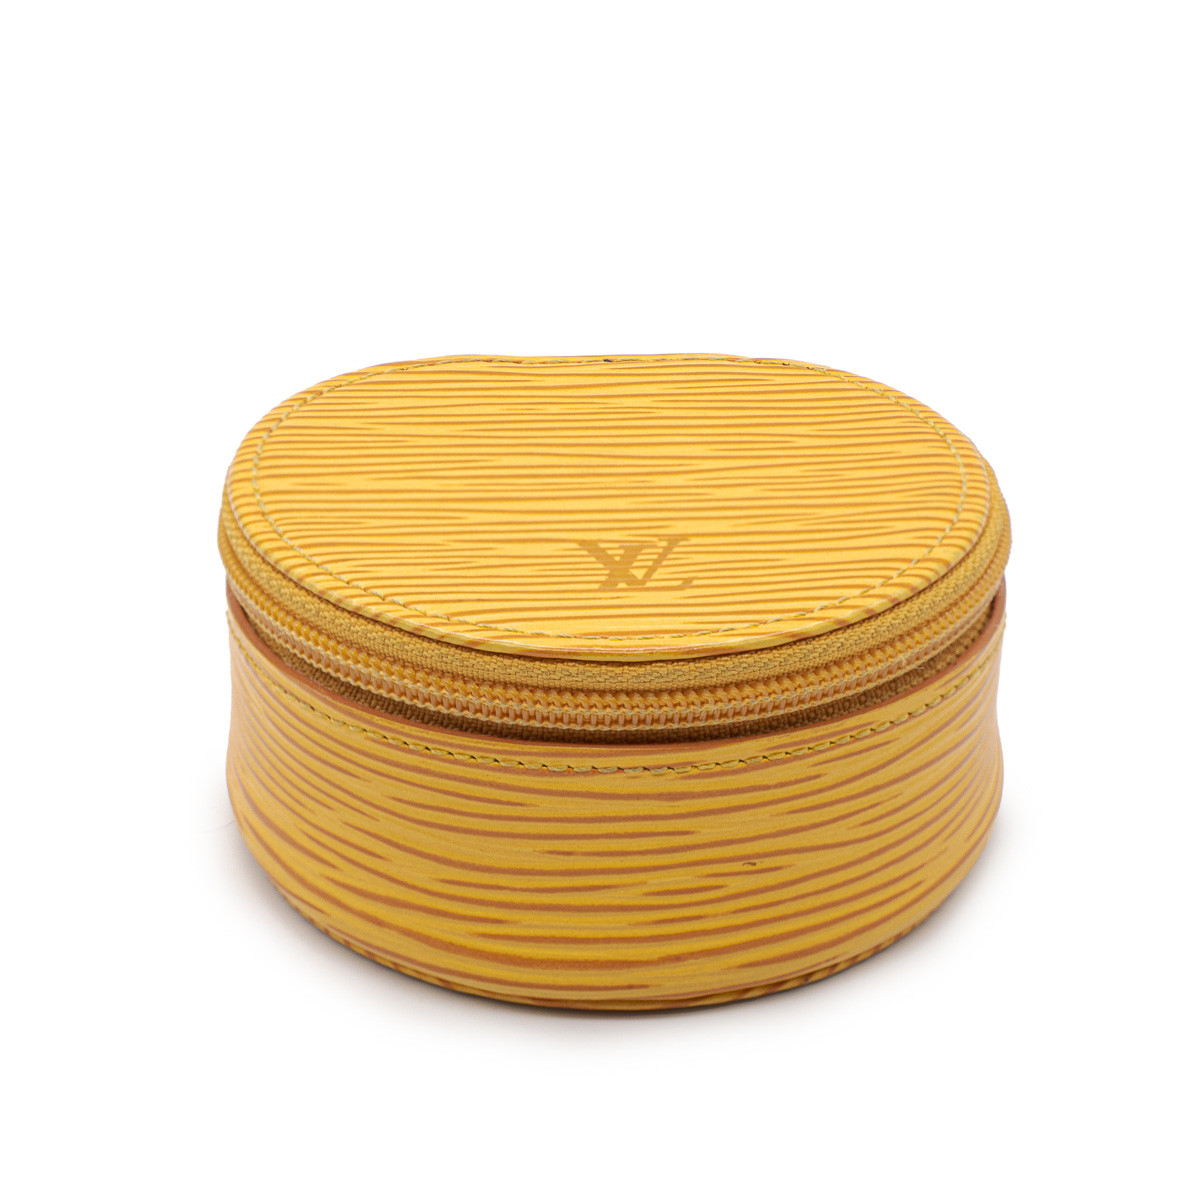 Louis Vuitton raro joyero de cuero Epi amarillo